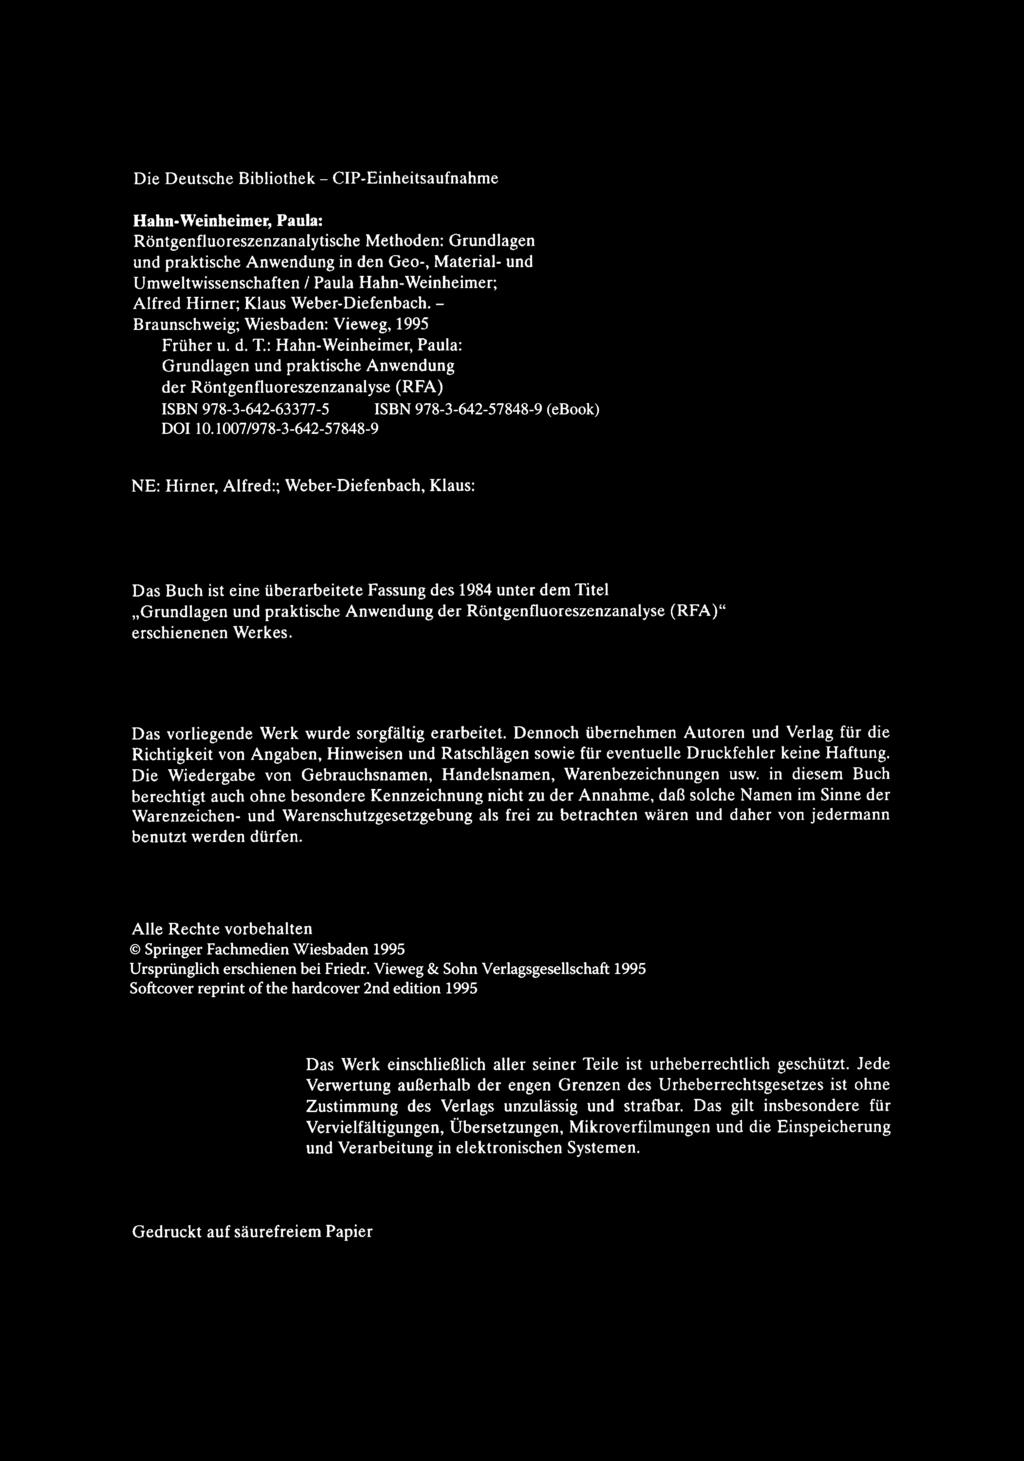 Die Deutsche Bibliothek - CIP-Einheitsaufnahme Hahn-Weinheimer, Paula: Röntgenfluoreszenzanalytische Methoden: Grundlagen und praktische Anwendung in den Geo-, Material- und Umweltwissenschaften /